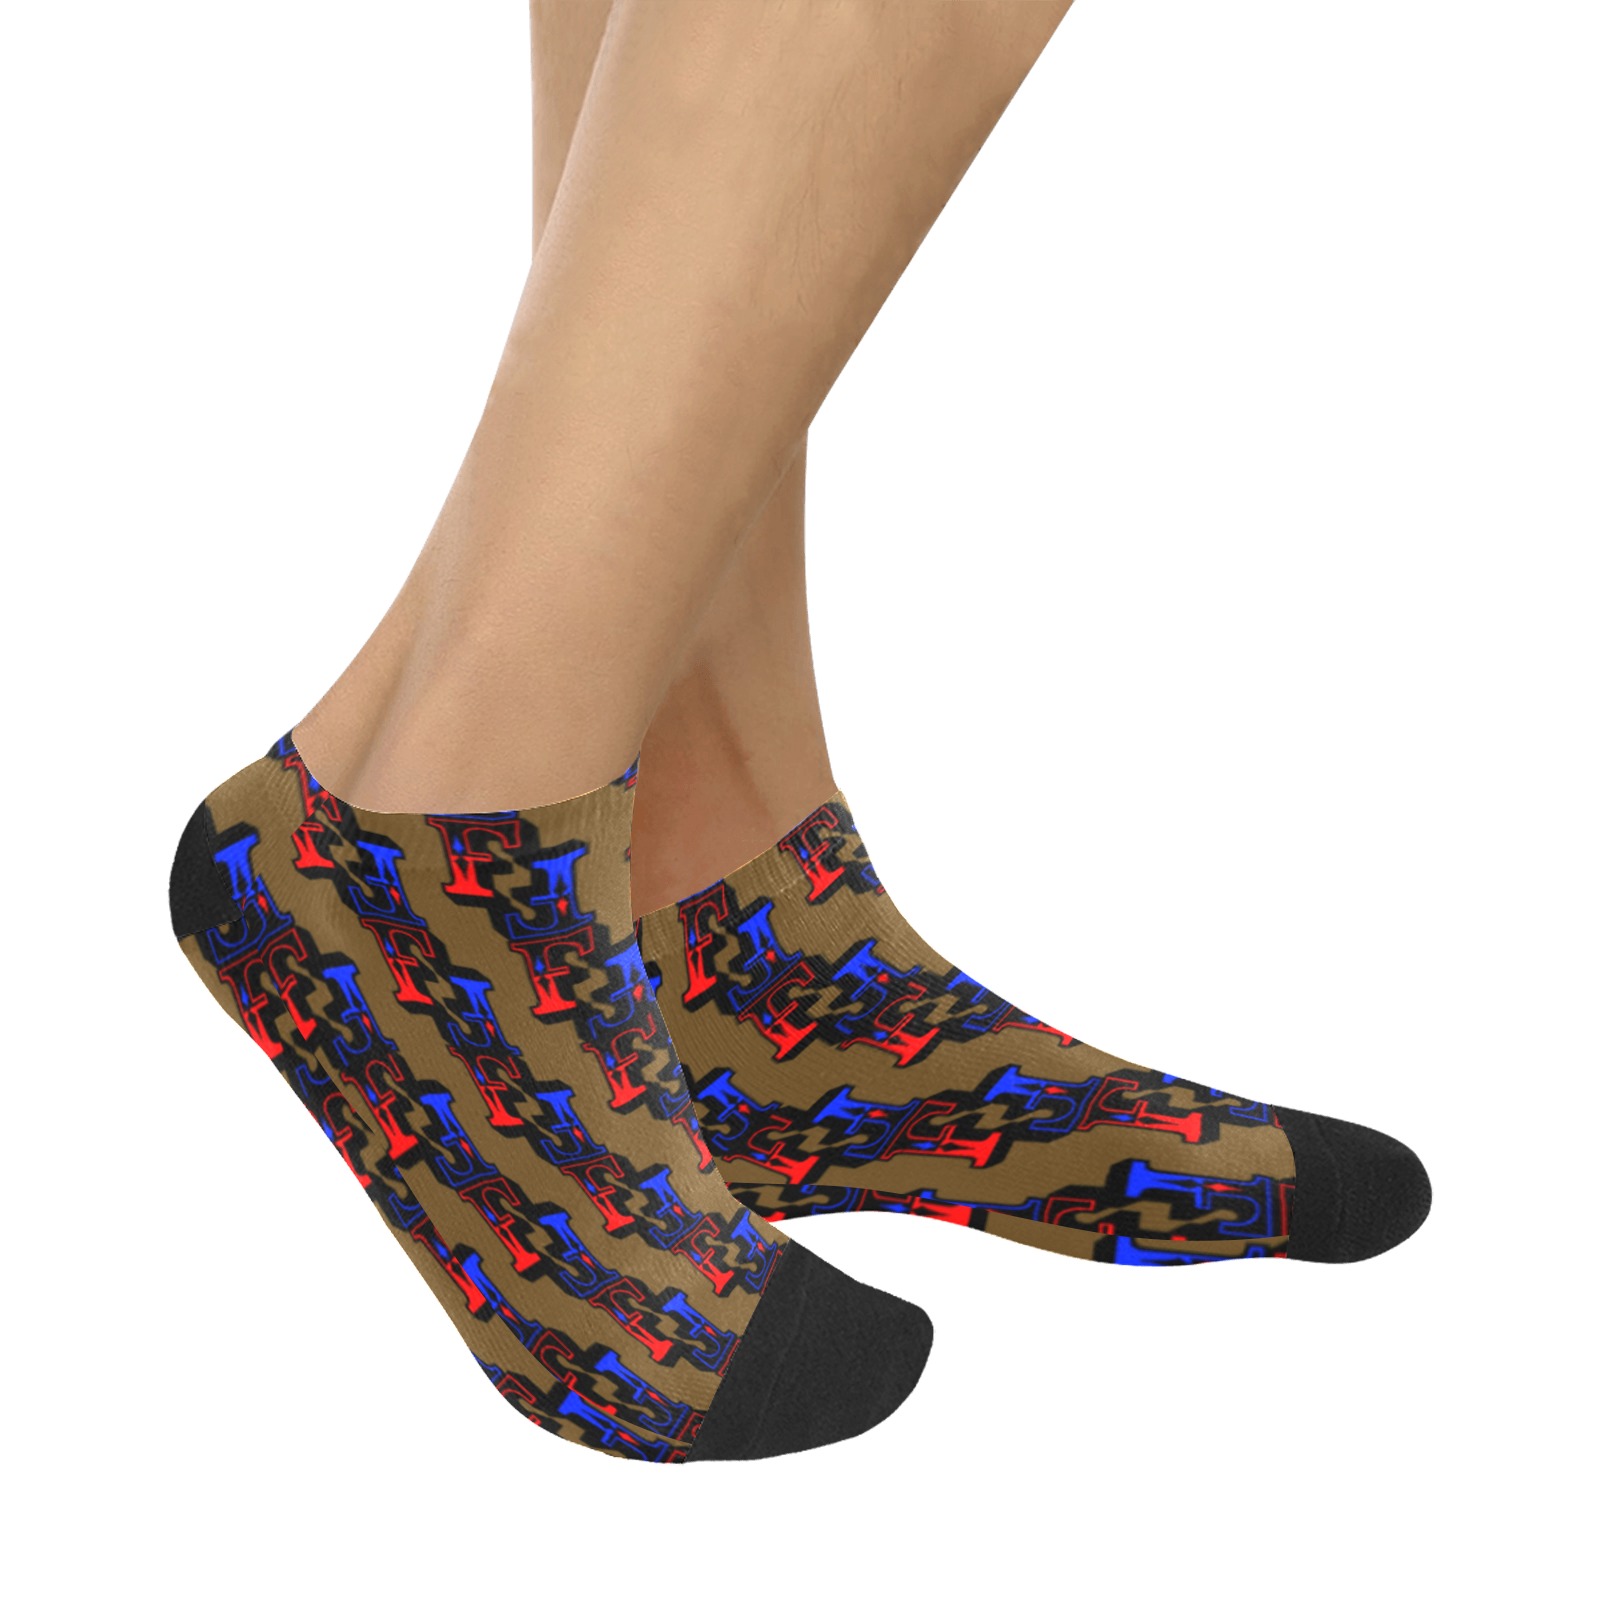 The Fbr Women's Ankle Socks